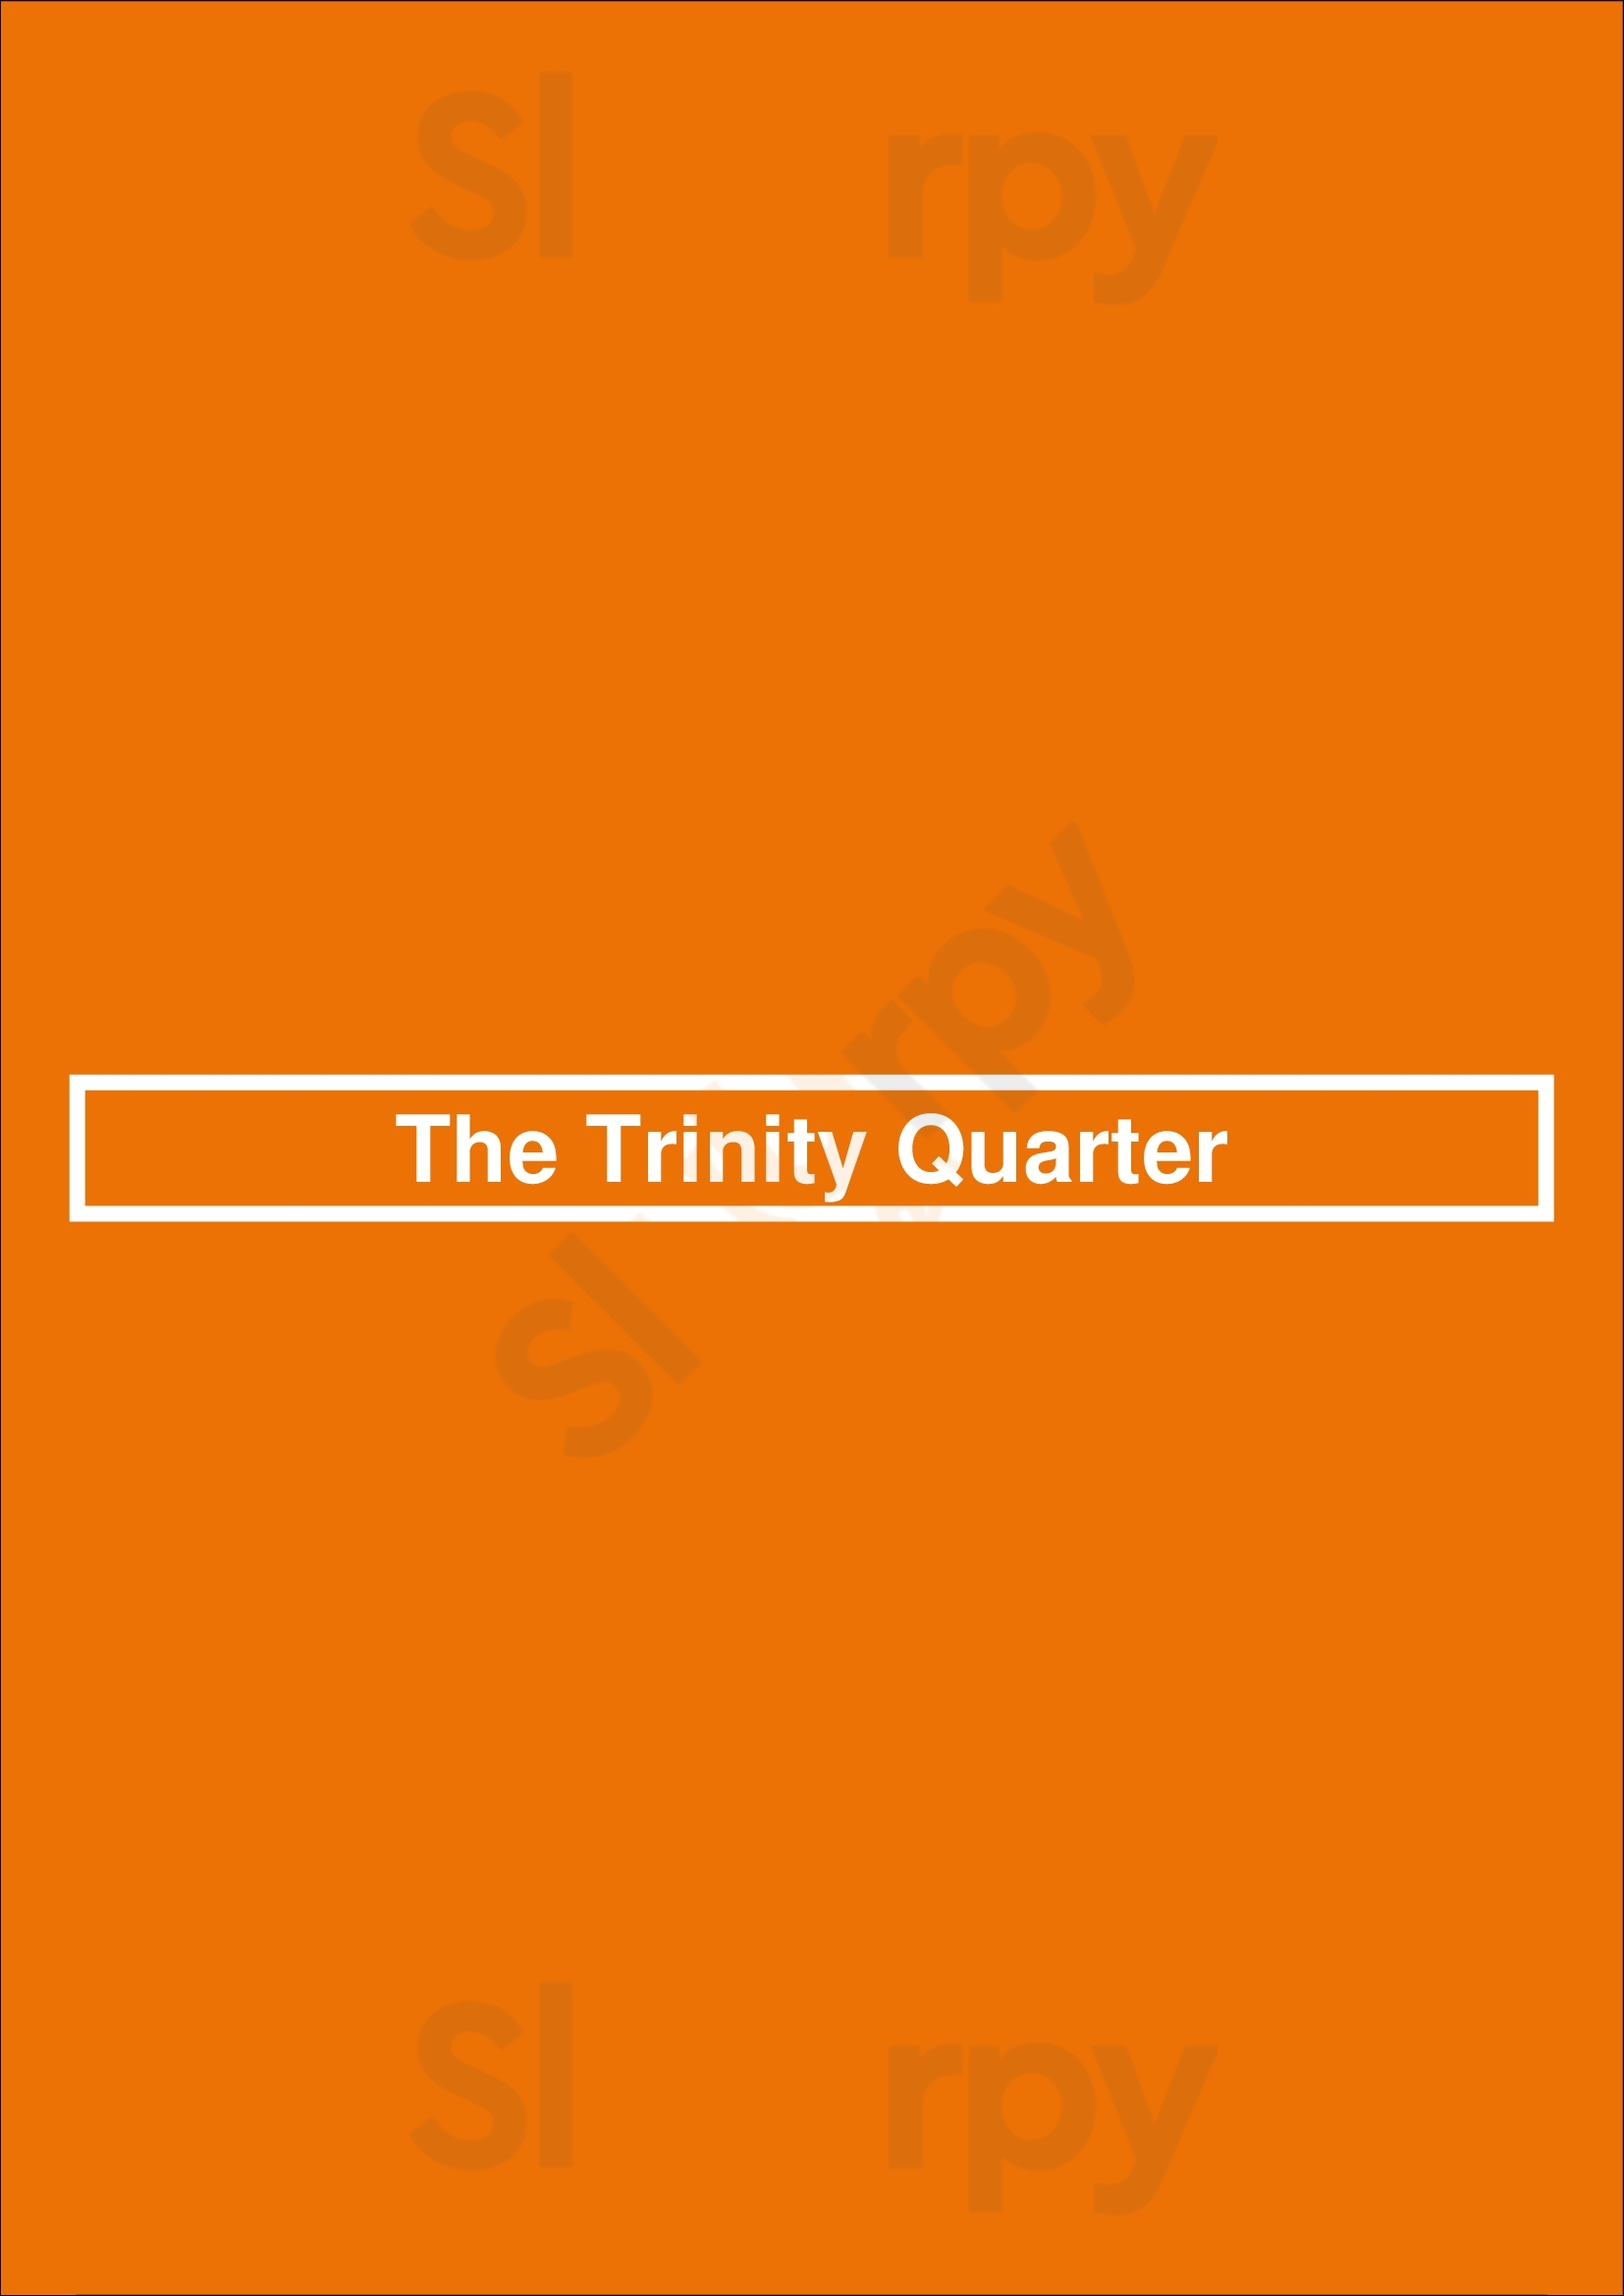 The Trinity Quarter Drogheda Menu - 1